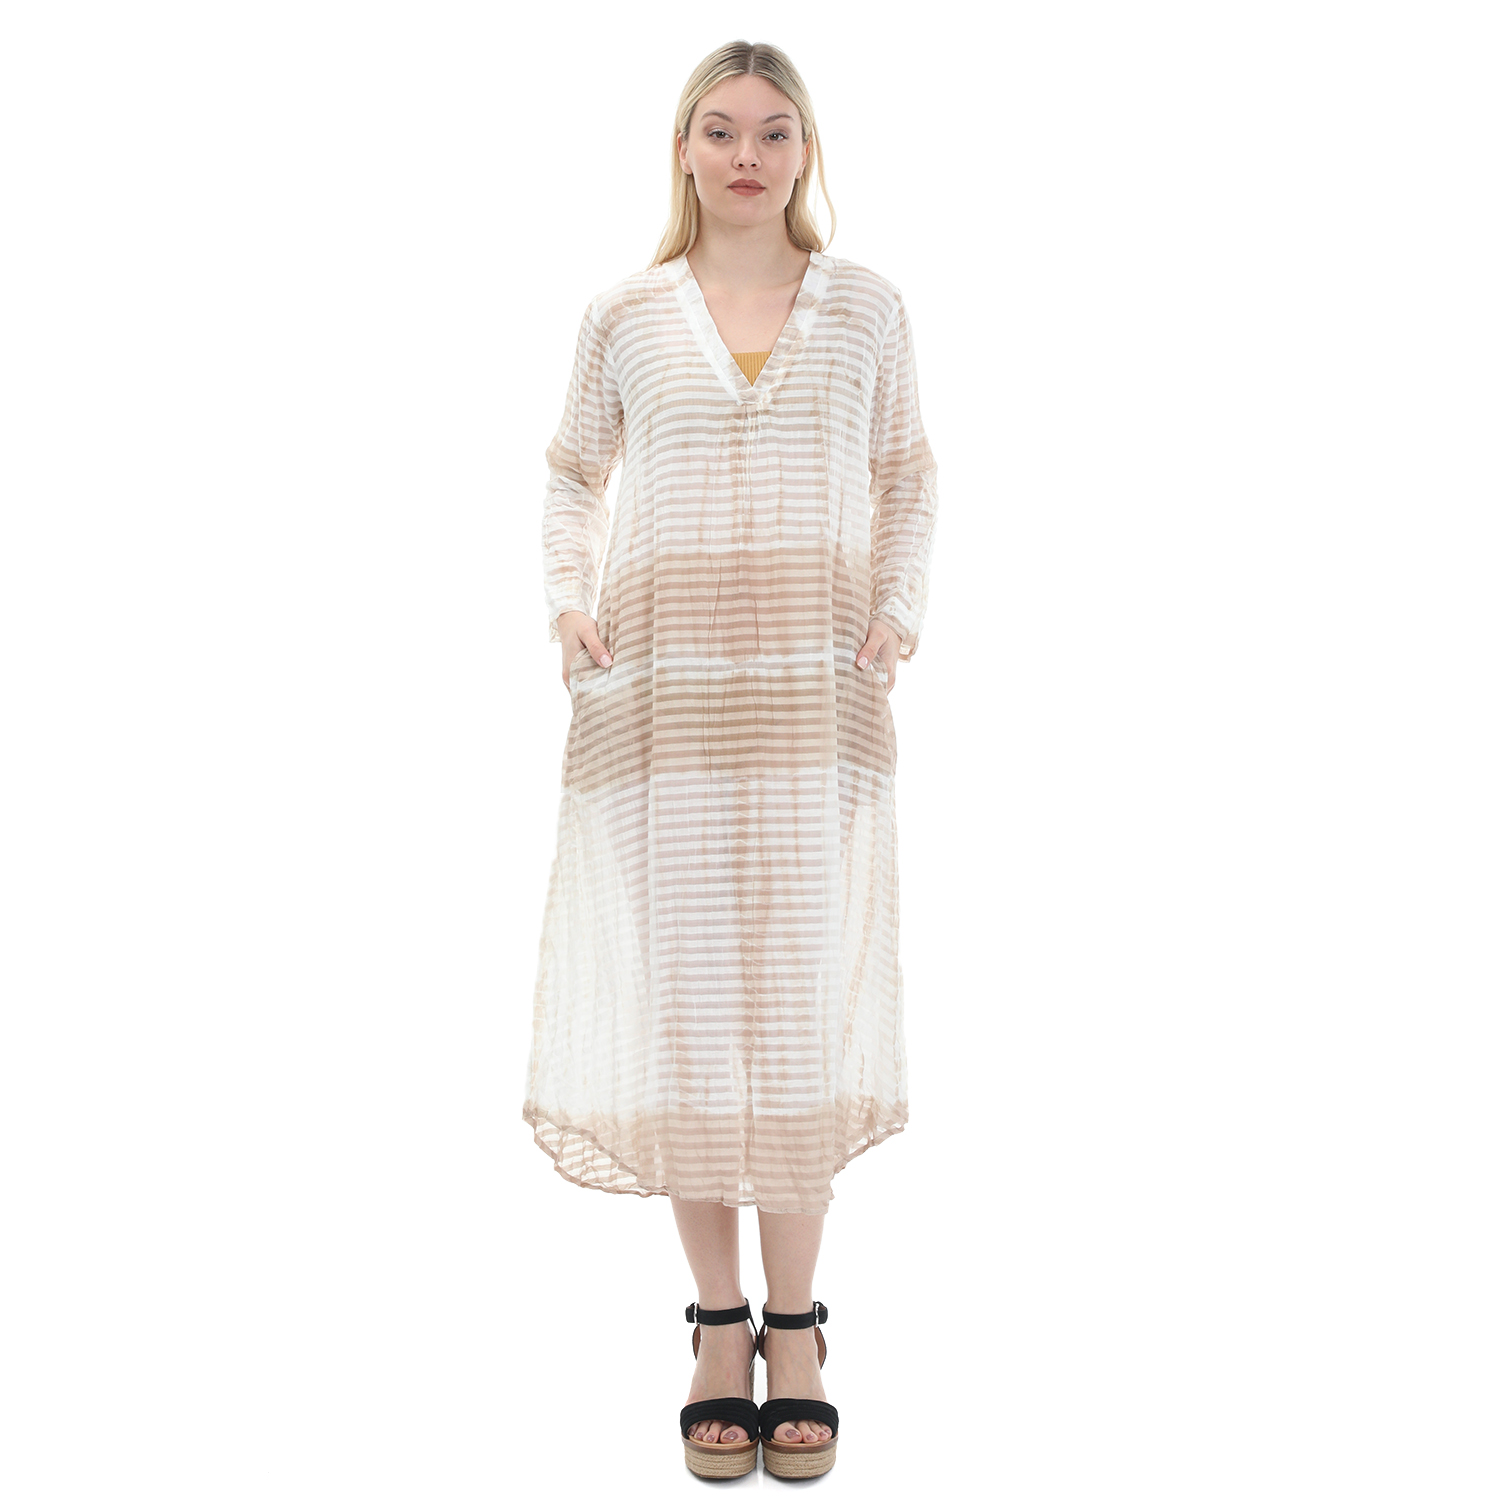 Γυναικεία/Ρούχα/Φορέματα/Μάξι ONESEASON - Γυναικείο maxi φόρεμα ONESEASON JESS μπεζ λευκό